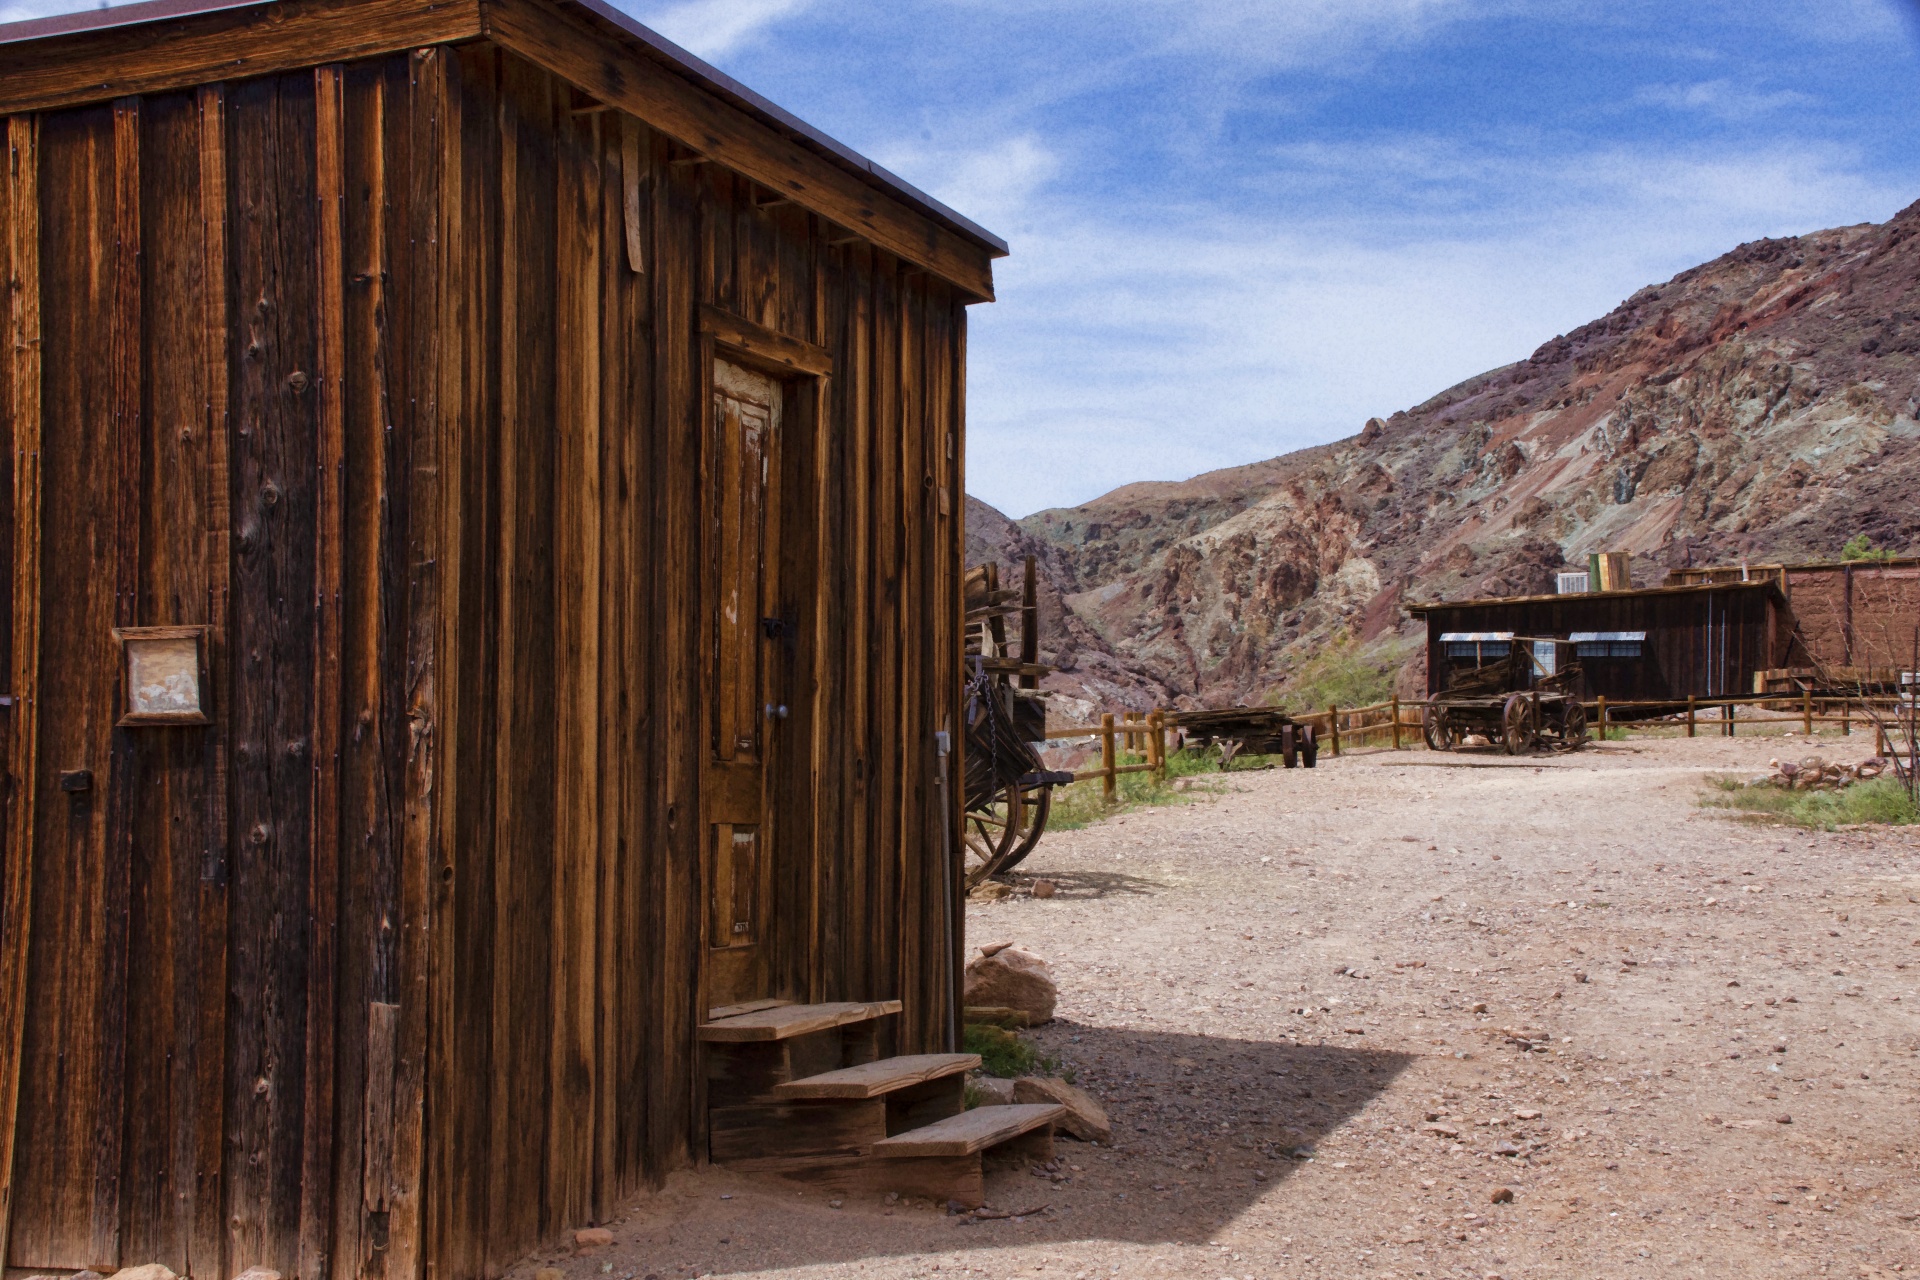 ghost town shacks in desert